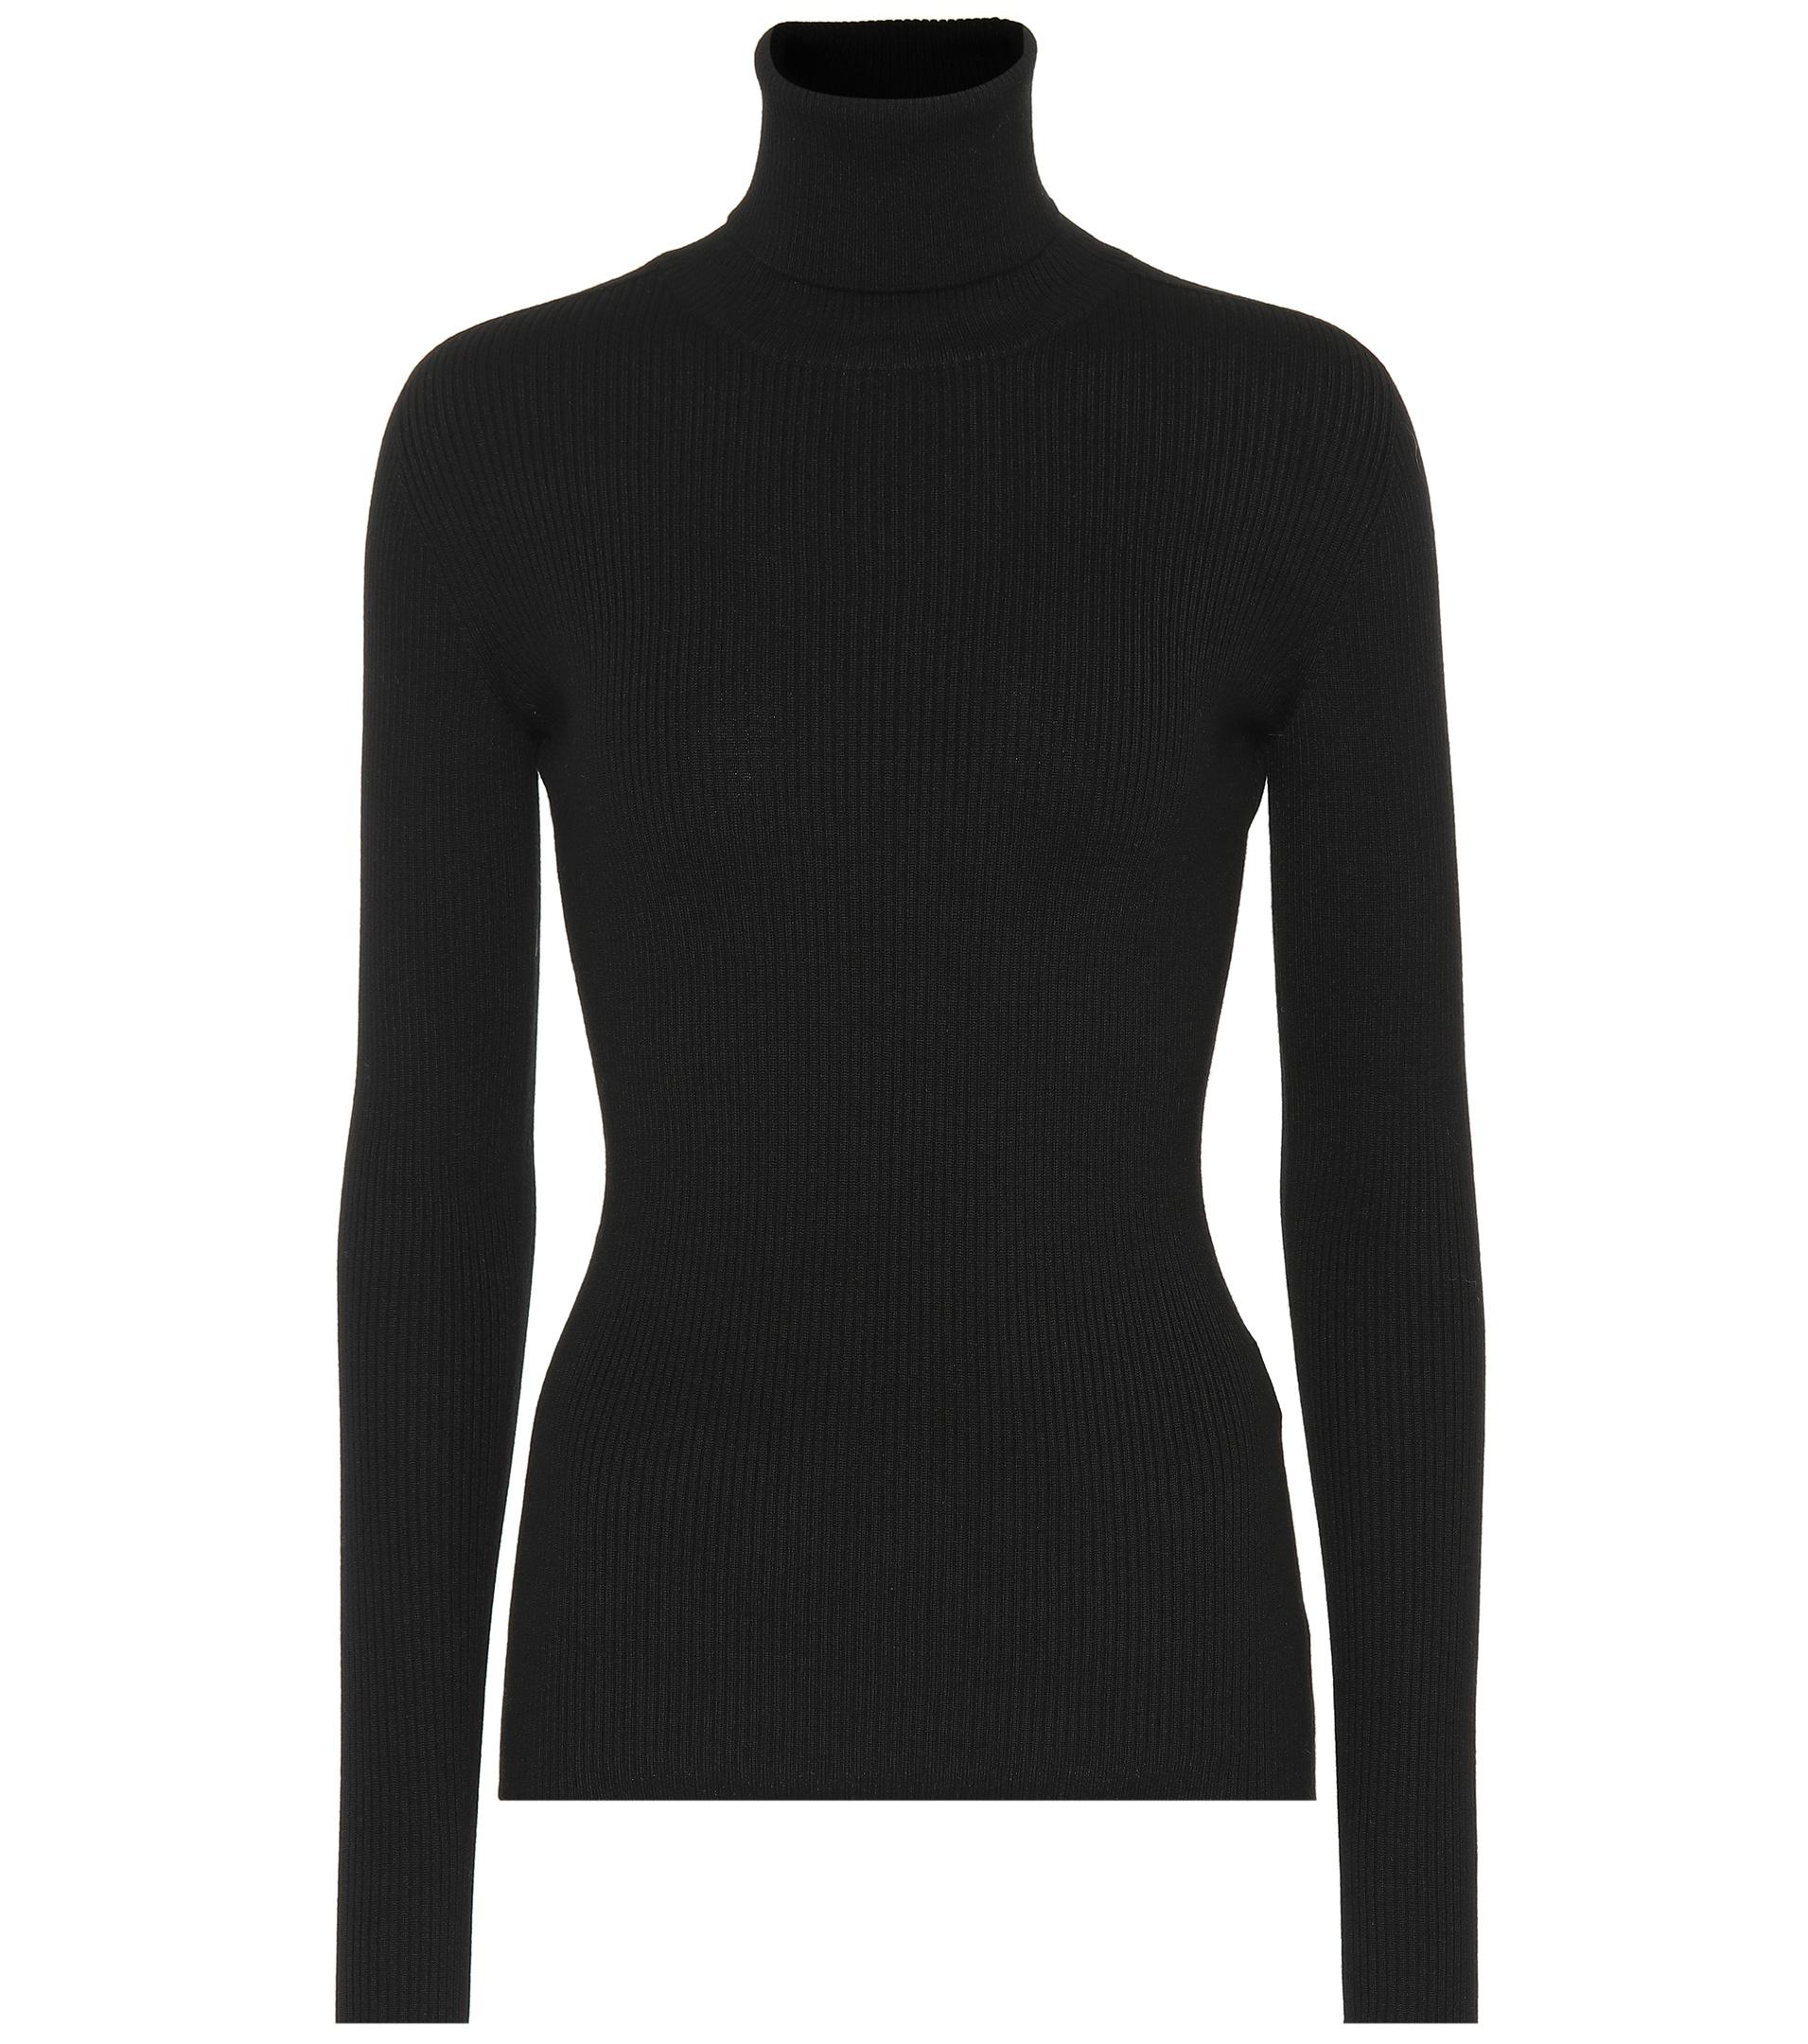 Dolce & Gabbana Virgin Wool Turtleneck Sweater in Black - Lyst